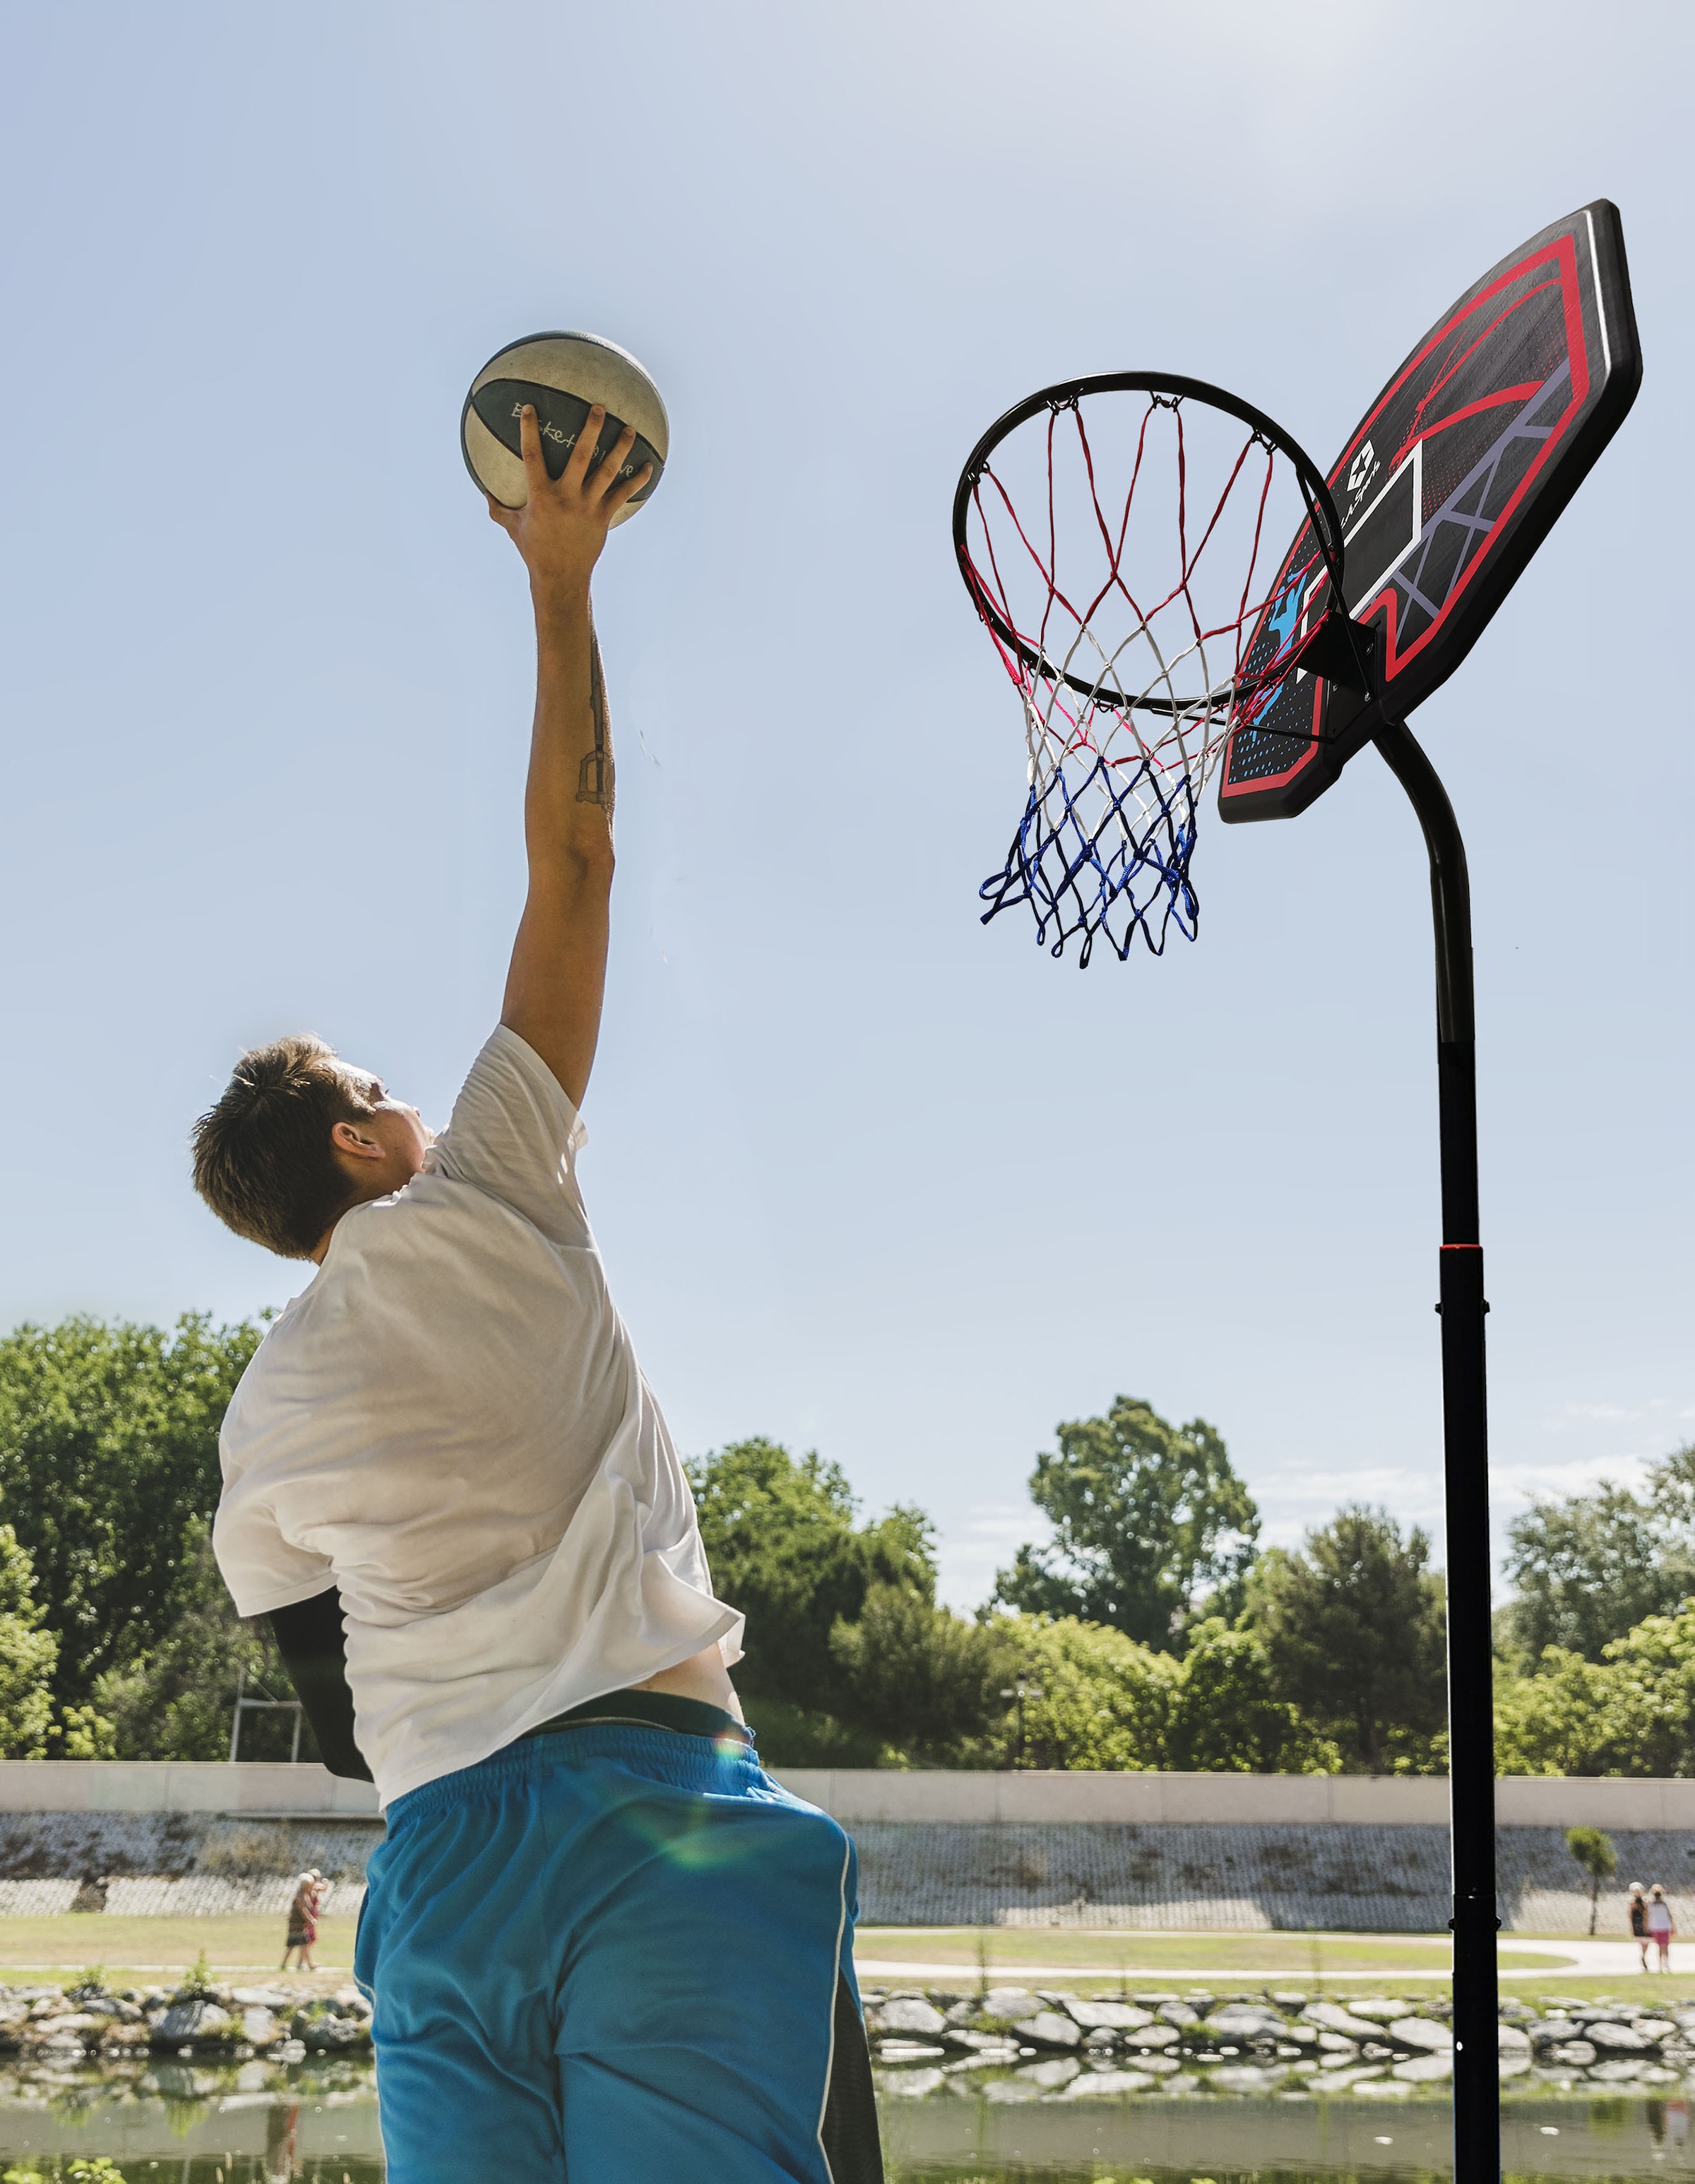 L.A. Sports Basketballkorb, (Set, 3 St., Komplett-Set mit Basketballkorb, Netz und Ständer), mit Transportrollen, stabile pulverbeschichtete Metallrohre